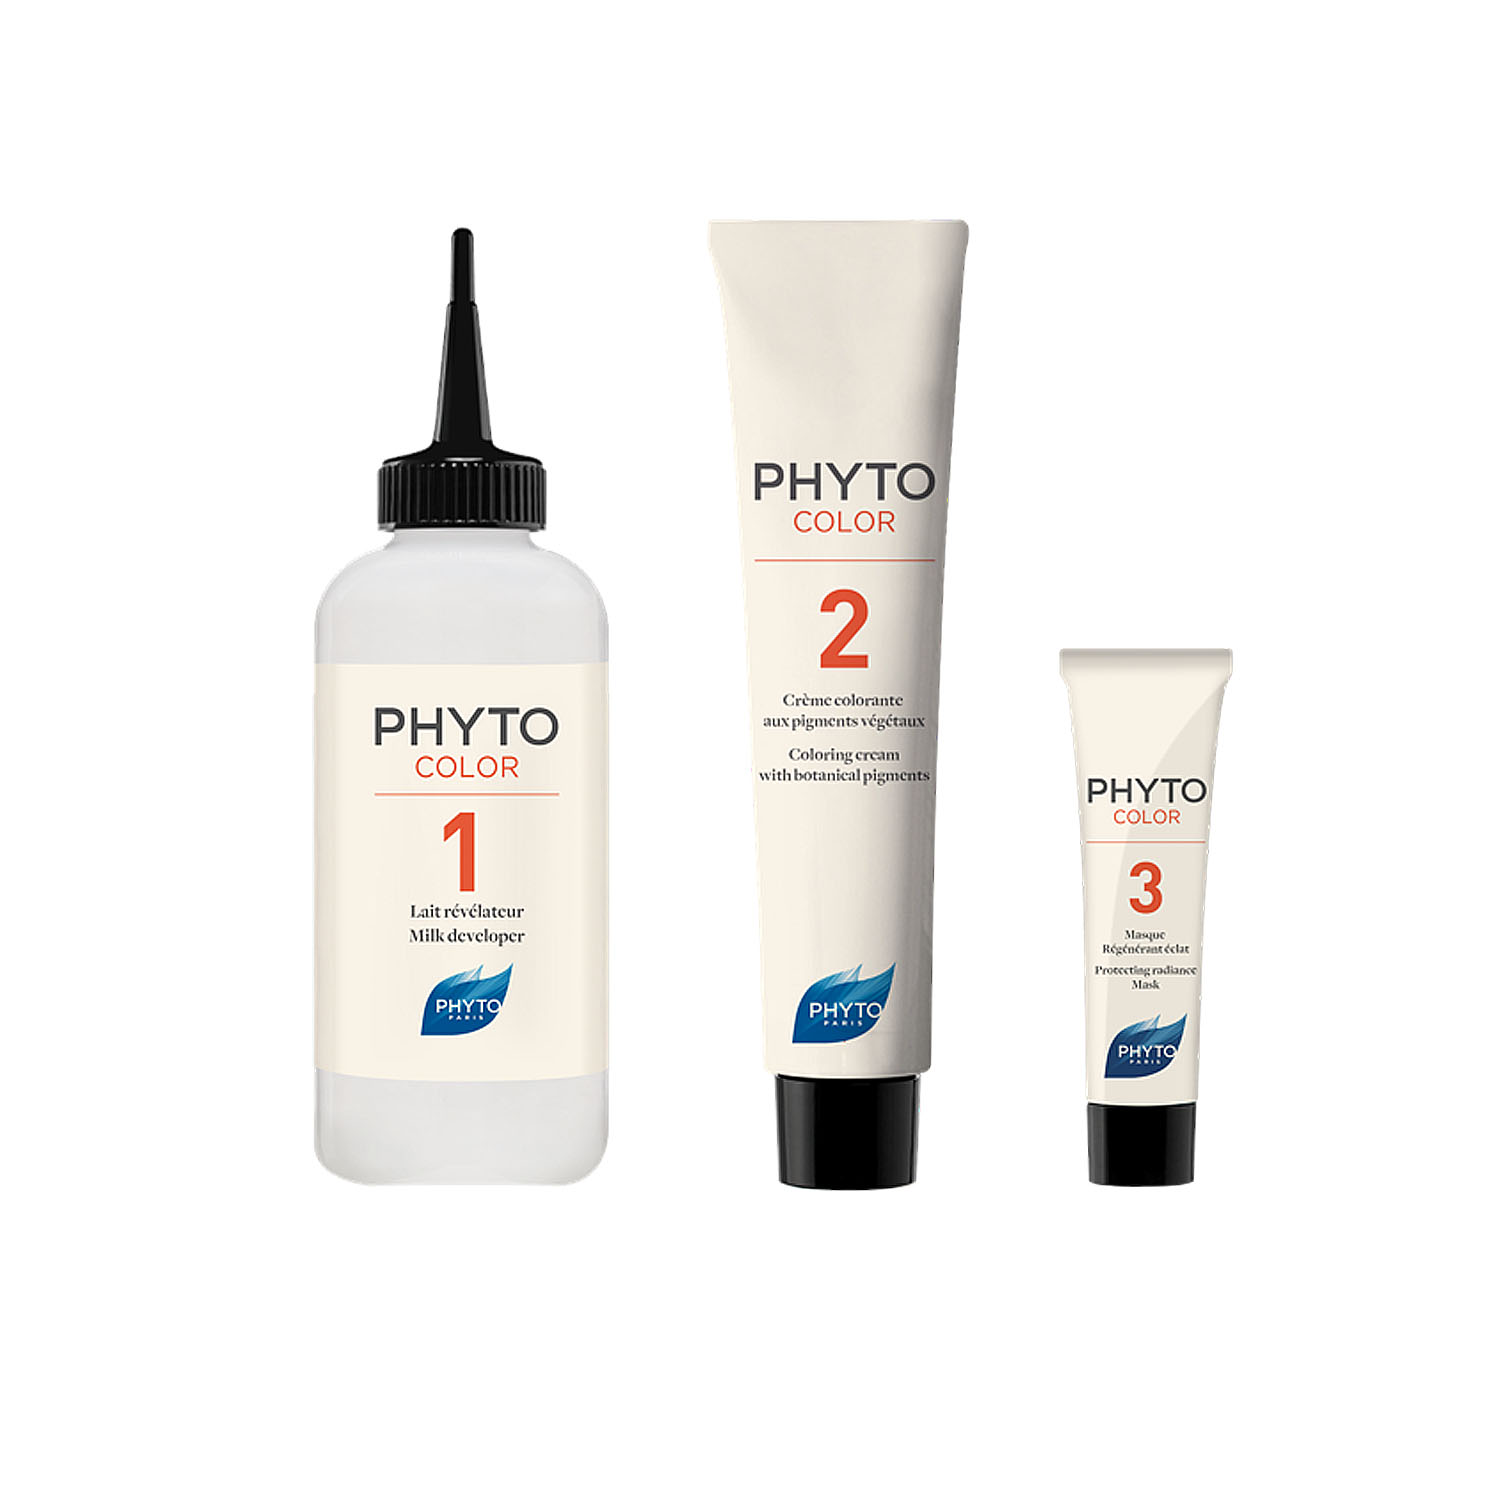 Phytosolba Phyto Hair Color краска для волос 5 светлый шатен 50/50/12мл, Lab.Phytosolba  - купить